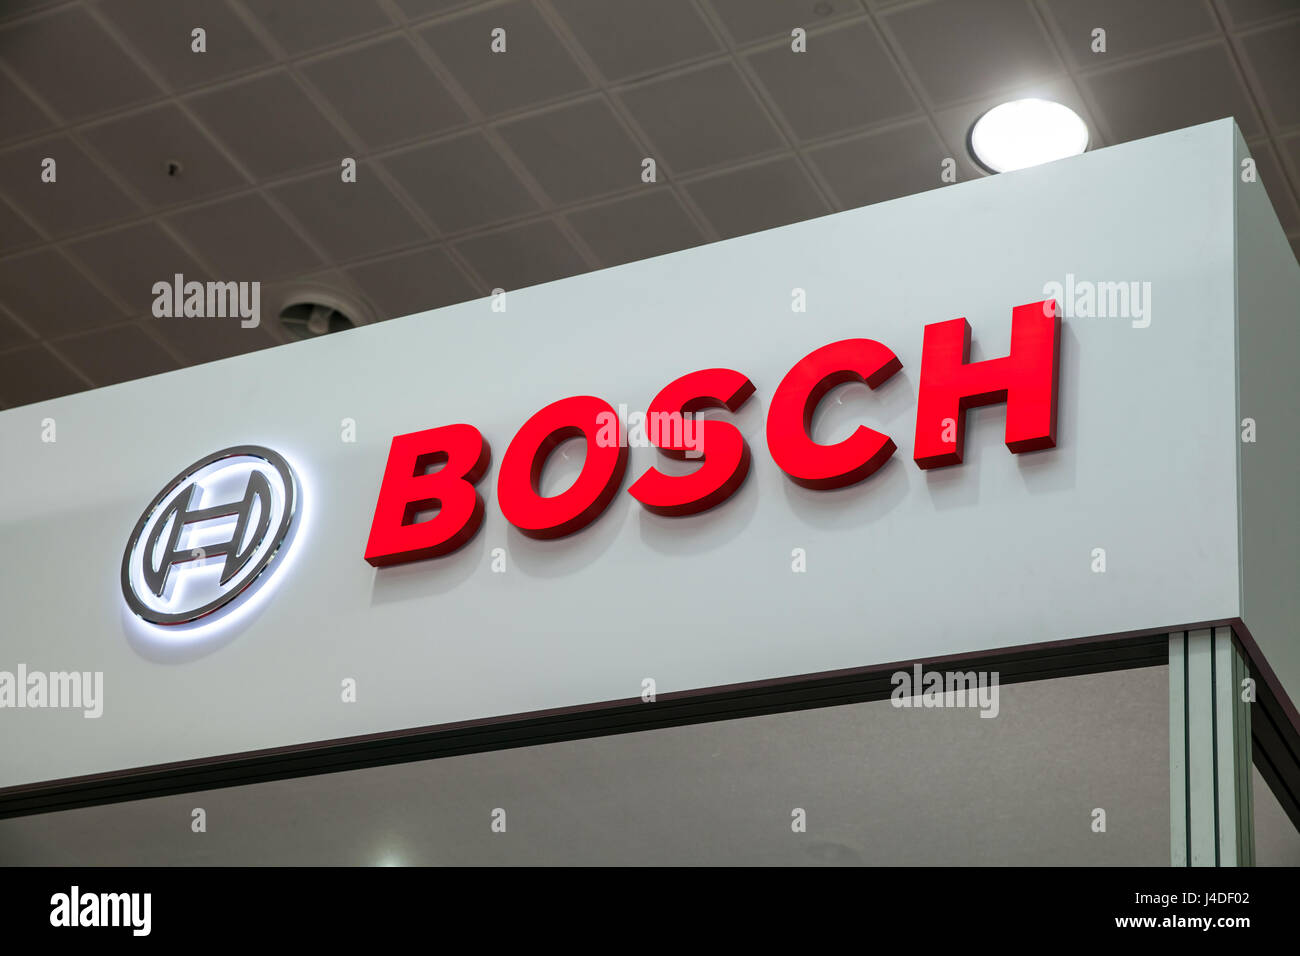 Logotipo de empresa de Bosch en la pared. La multinacional alemana Bosch es una empresa de electrónica e ingeniería Foto de stock